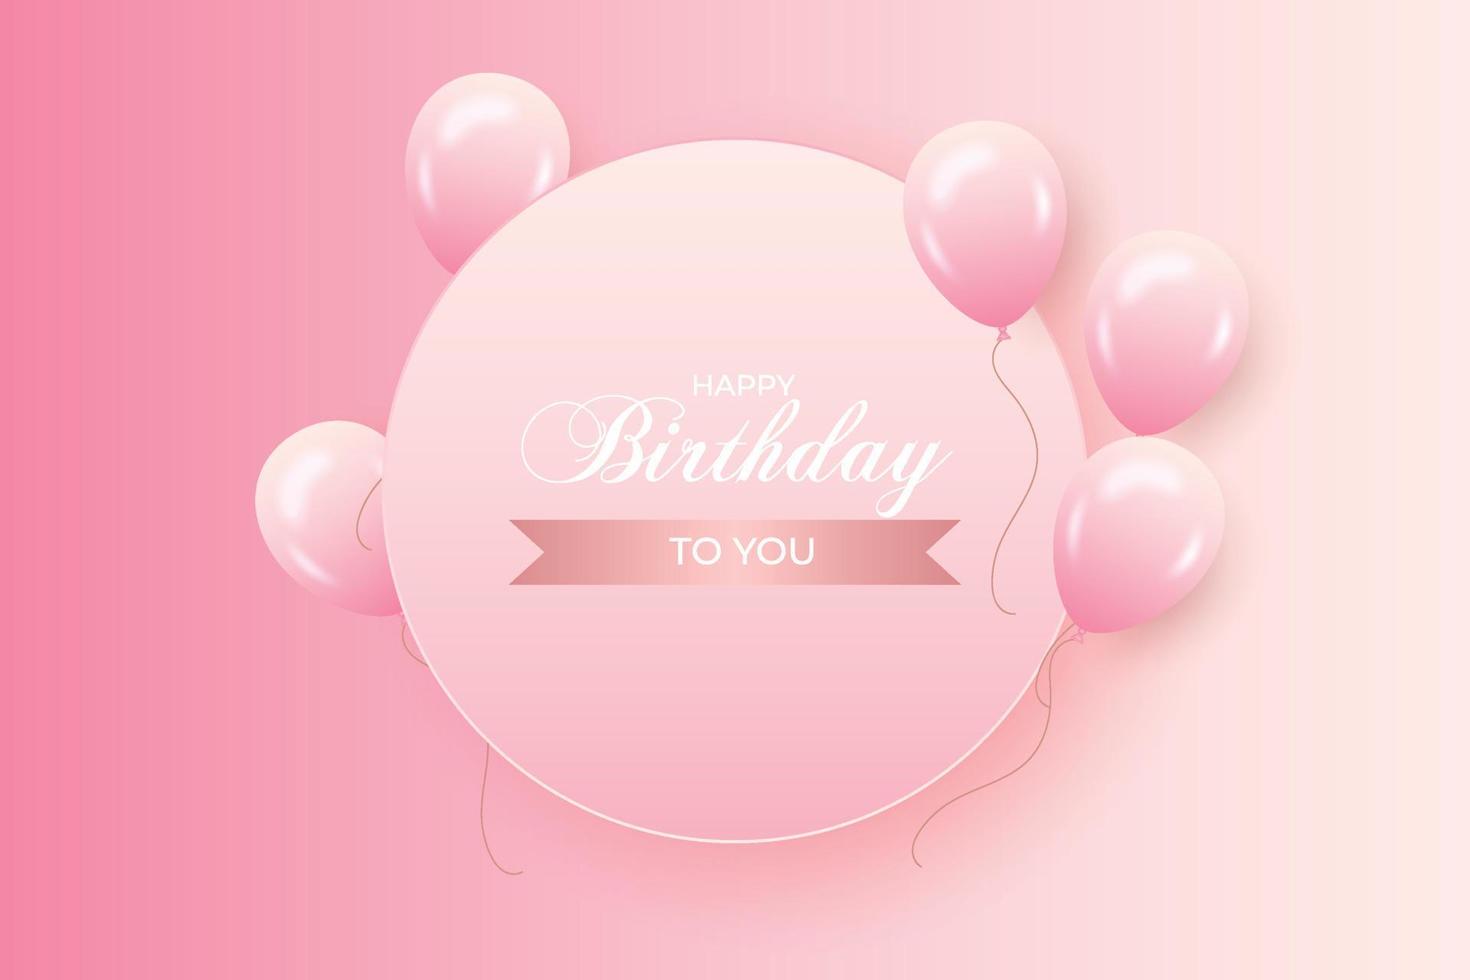 Geburtstagshintergrund mit realistischen rosa Luftballons und rosa Hintergrund vektor